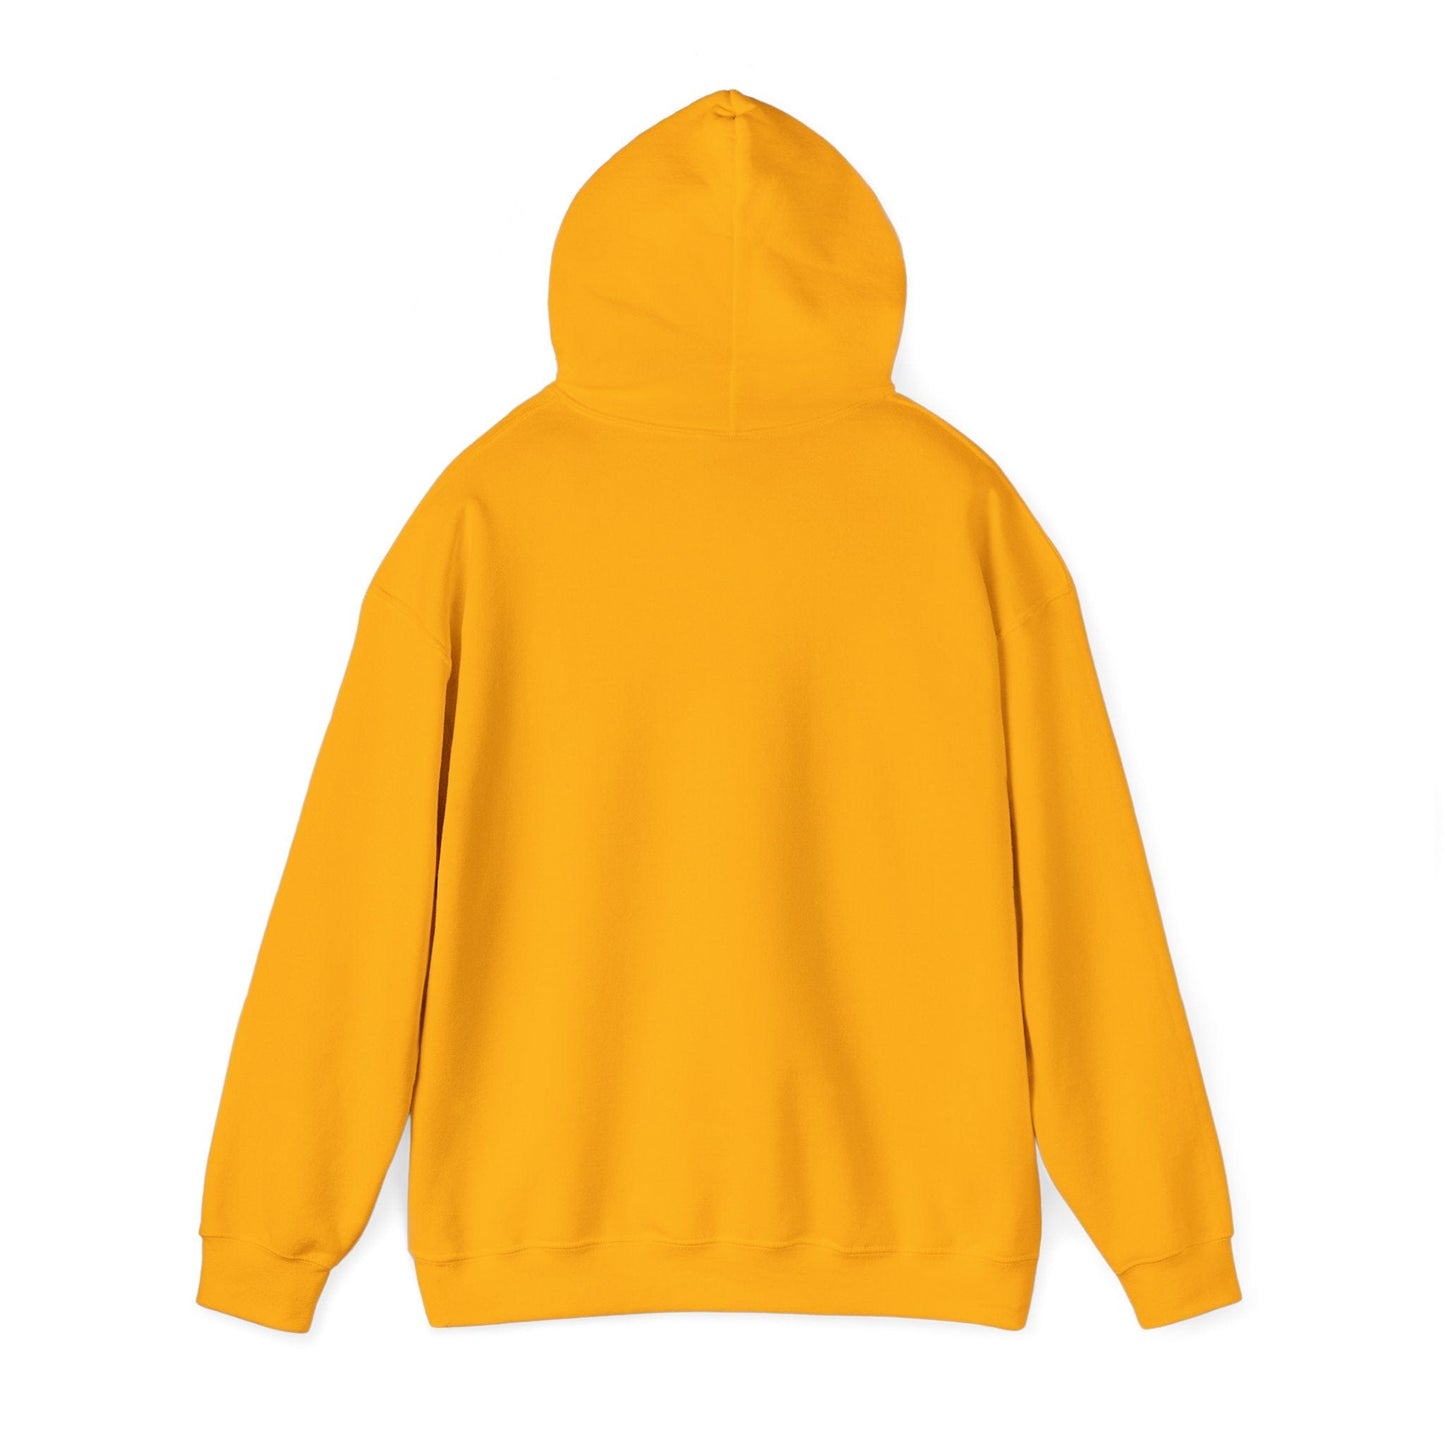 Grandma Is My Name Spoiling Is My Game Unisex Heavy Blend™ Hooded Sweatshirt